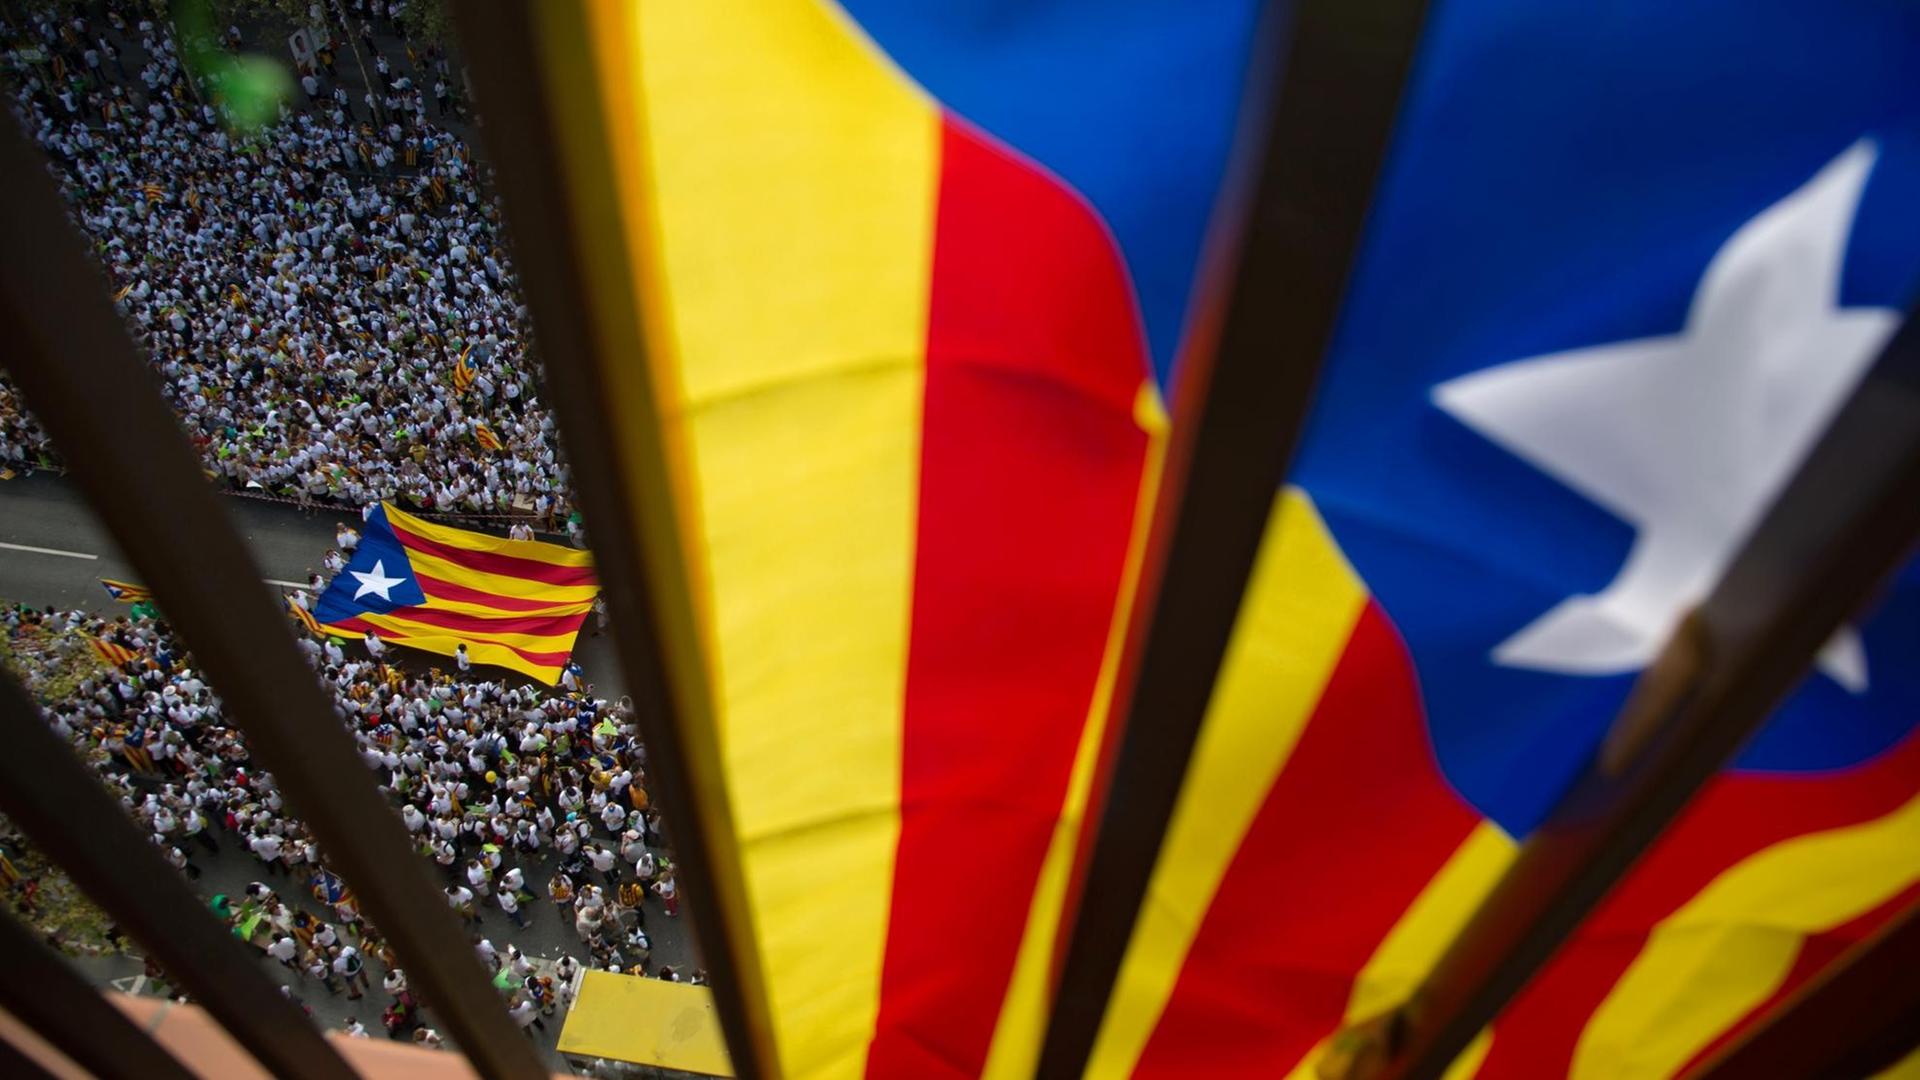 Barcelona am Nationalfeiertag Kataloniens. An einem Balkon hängt die katalanische Flagge, unterhalb des Balkons auf der Straße ziehen Menschen mit der Flagge durch die Straße.